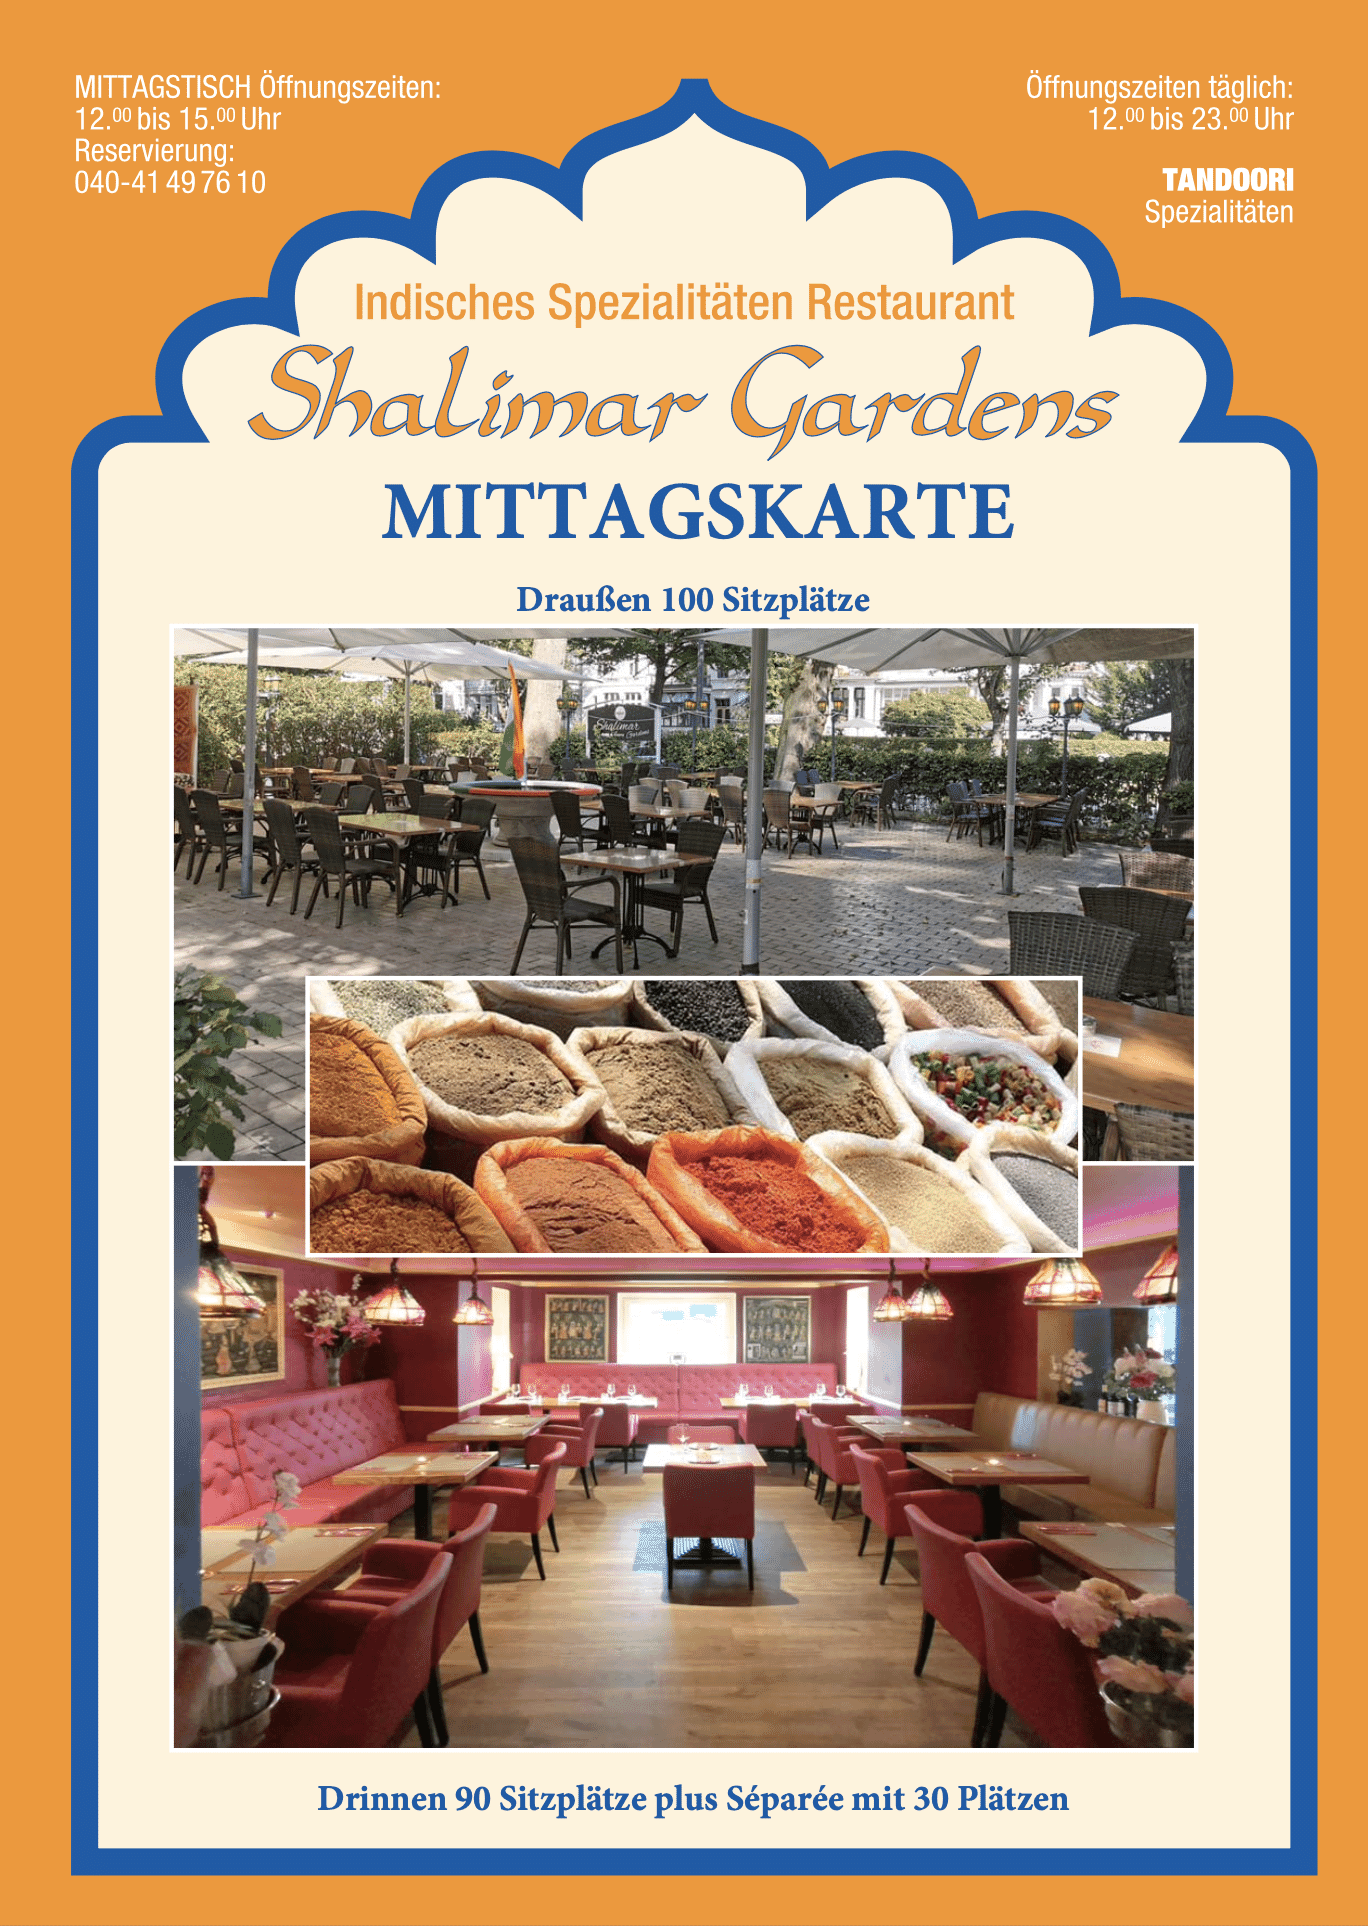 Mittagskarte Shalimar Gardens